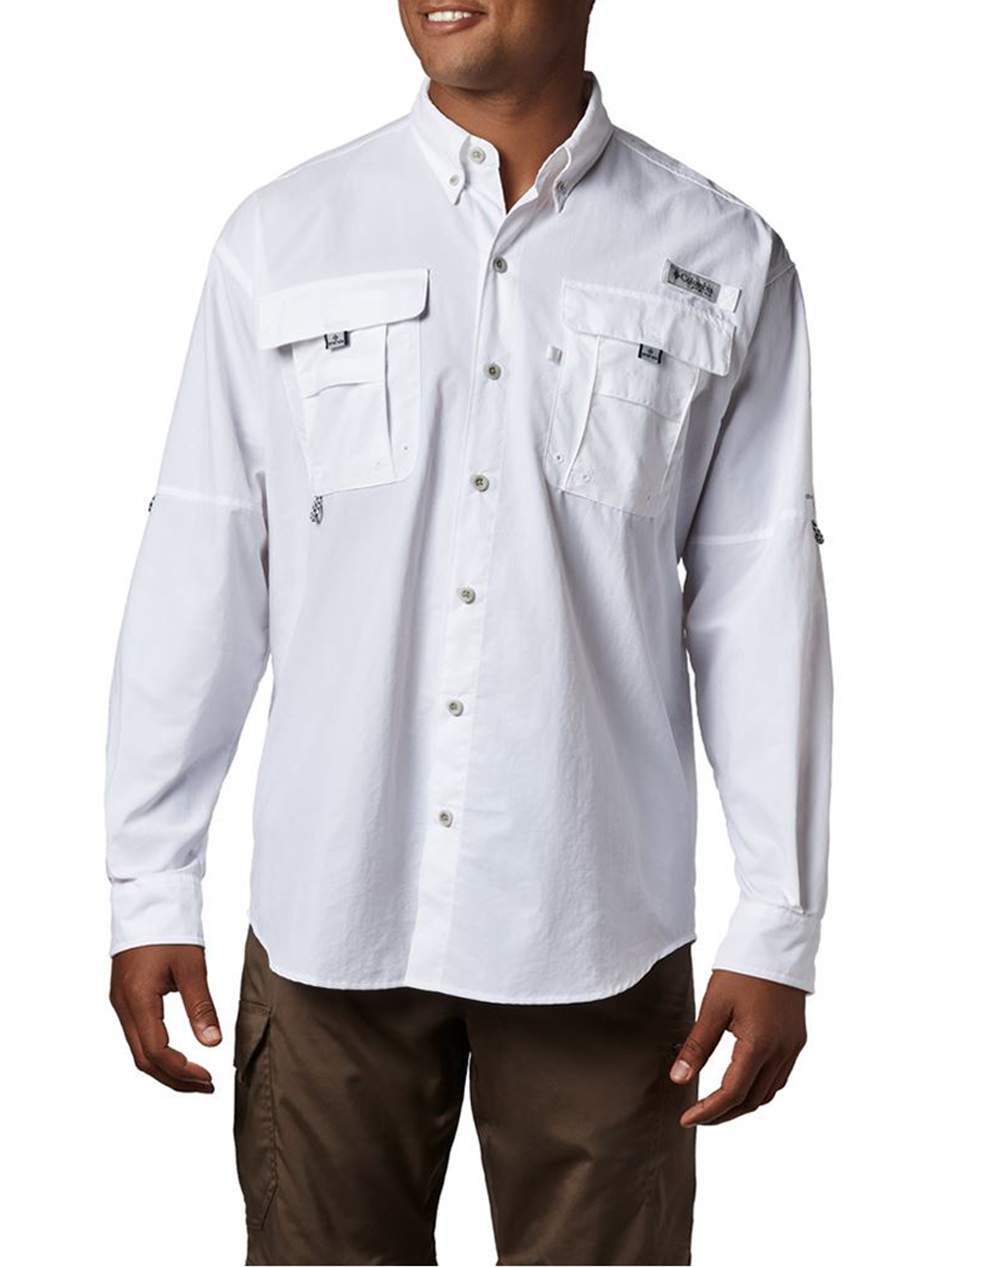 COLUMBIA Mens Bahama™ II L/S Shirt